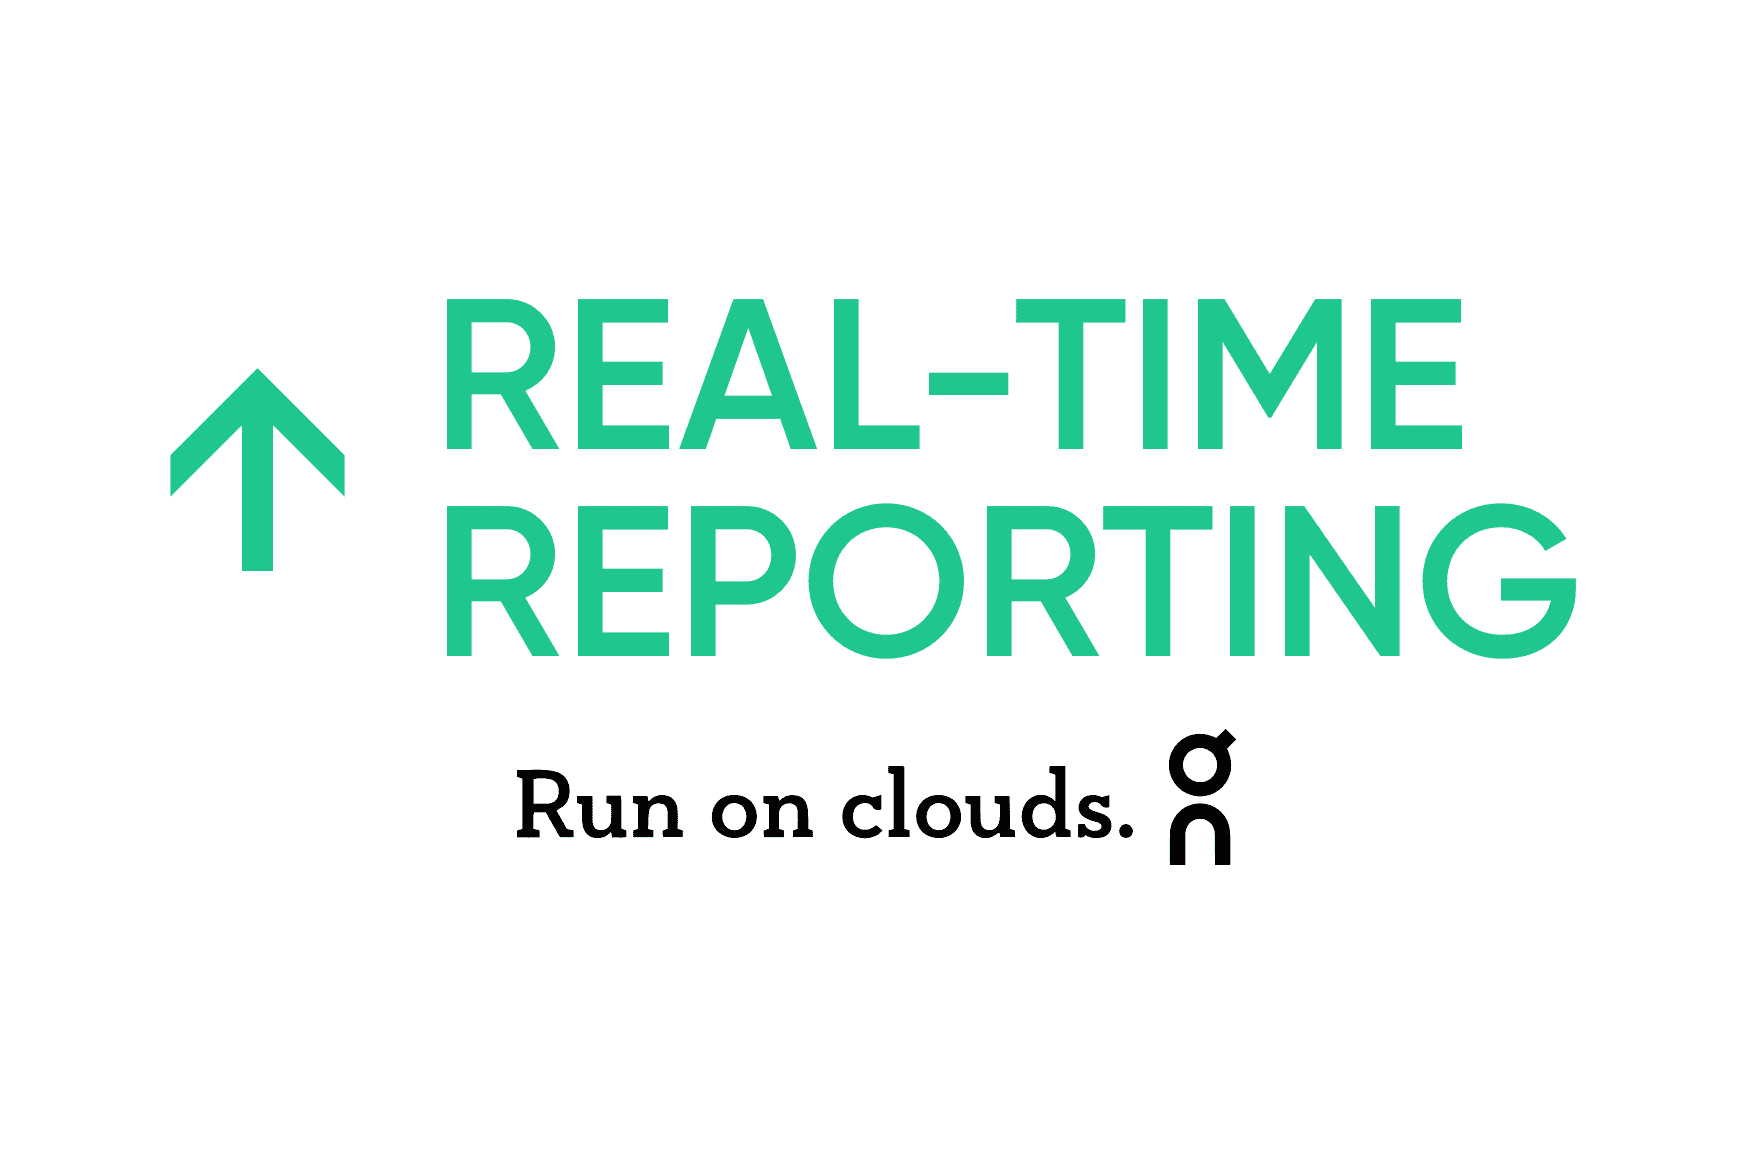 On: Relatórios melhorados em tempo real